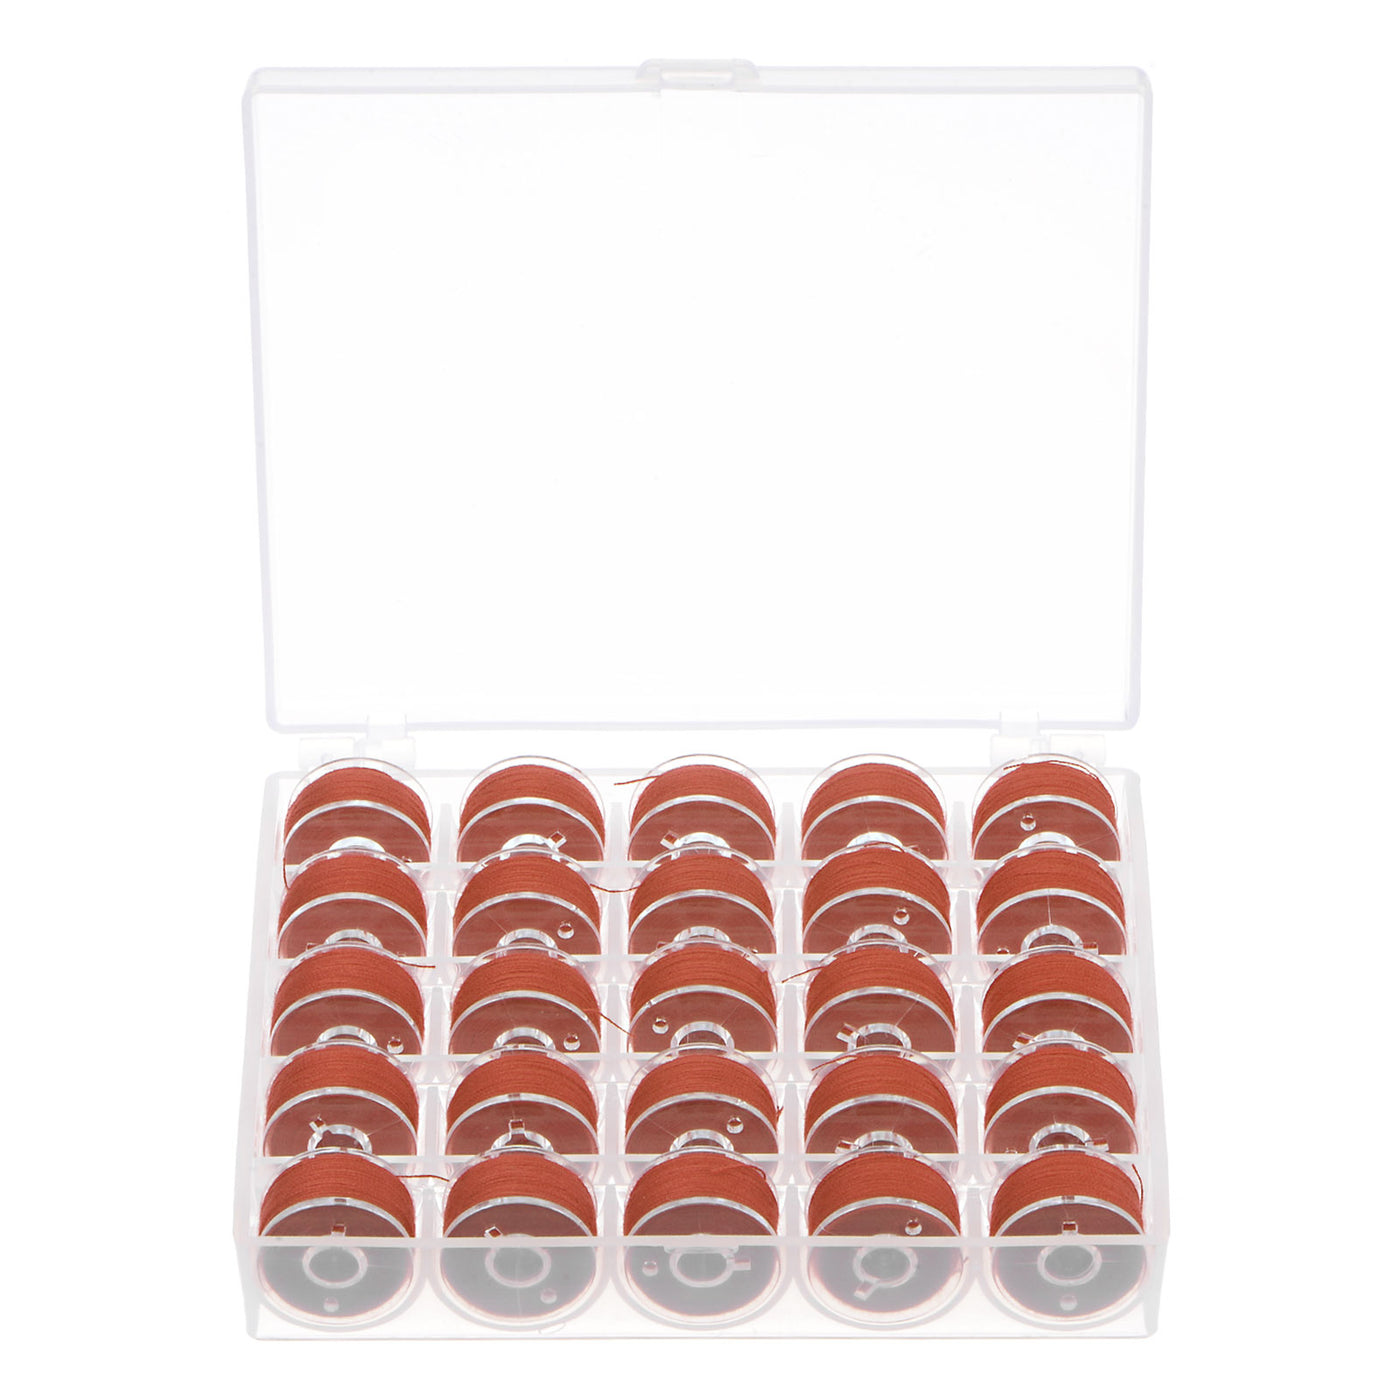 Harfington Prewound Sewing Bobbin Thread Set of 25pcs with Storage Plastic Case, Dark Red